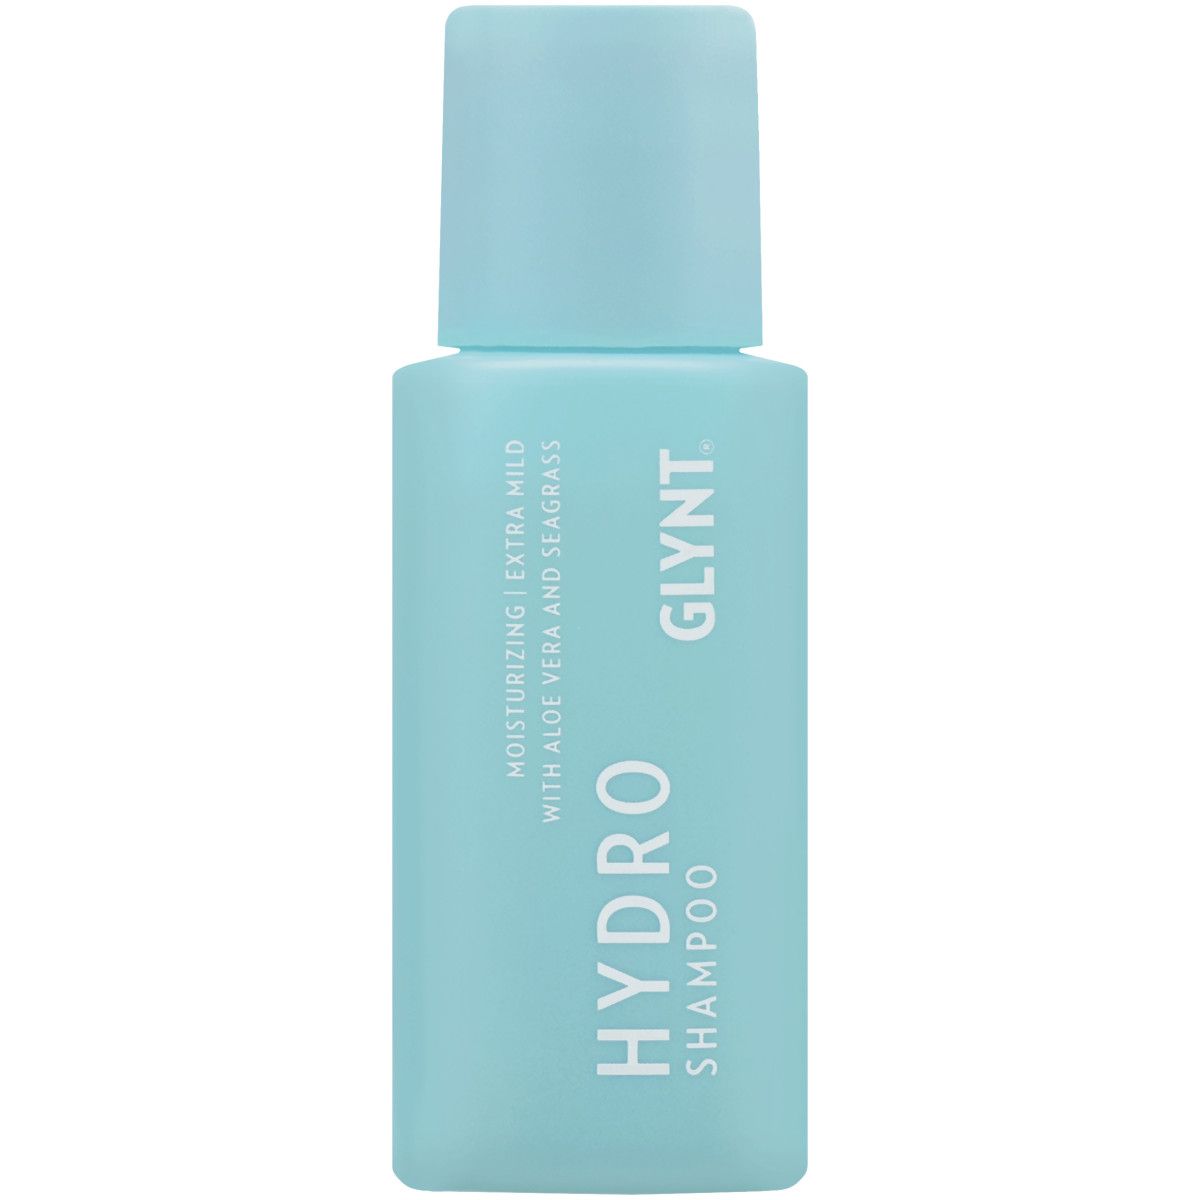 Glynt Hydro Shampoo - szampon głęboko nawilżający do włosów, 50ml